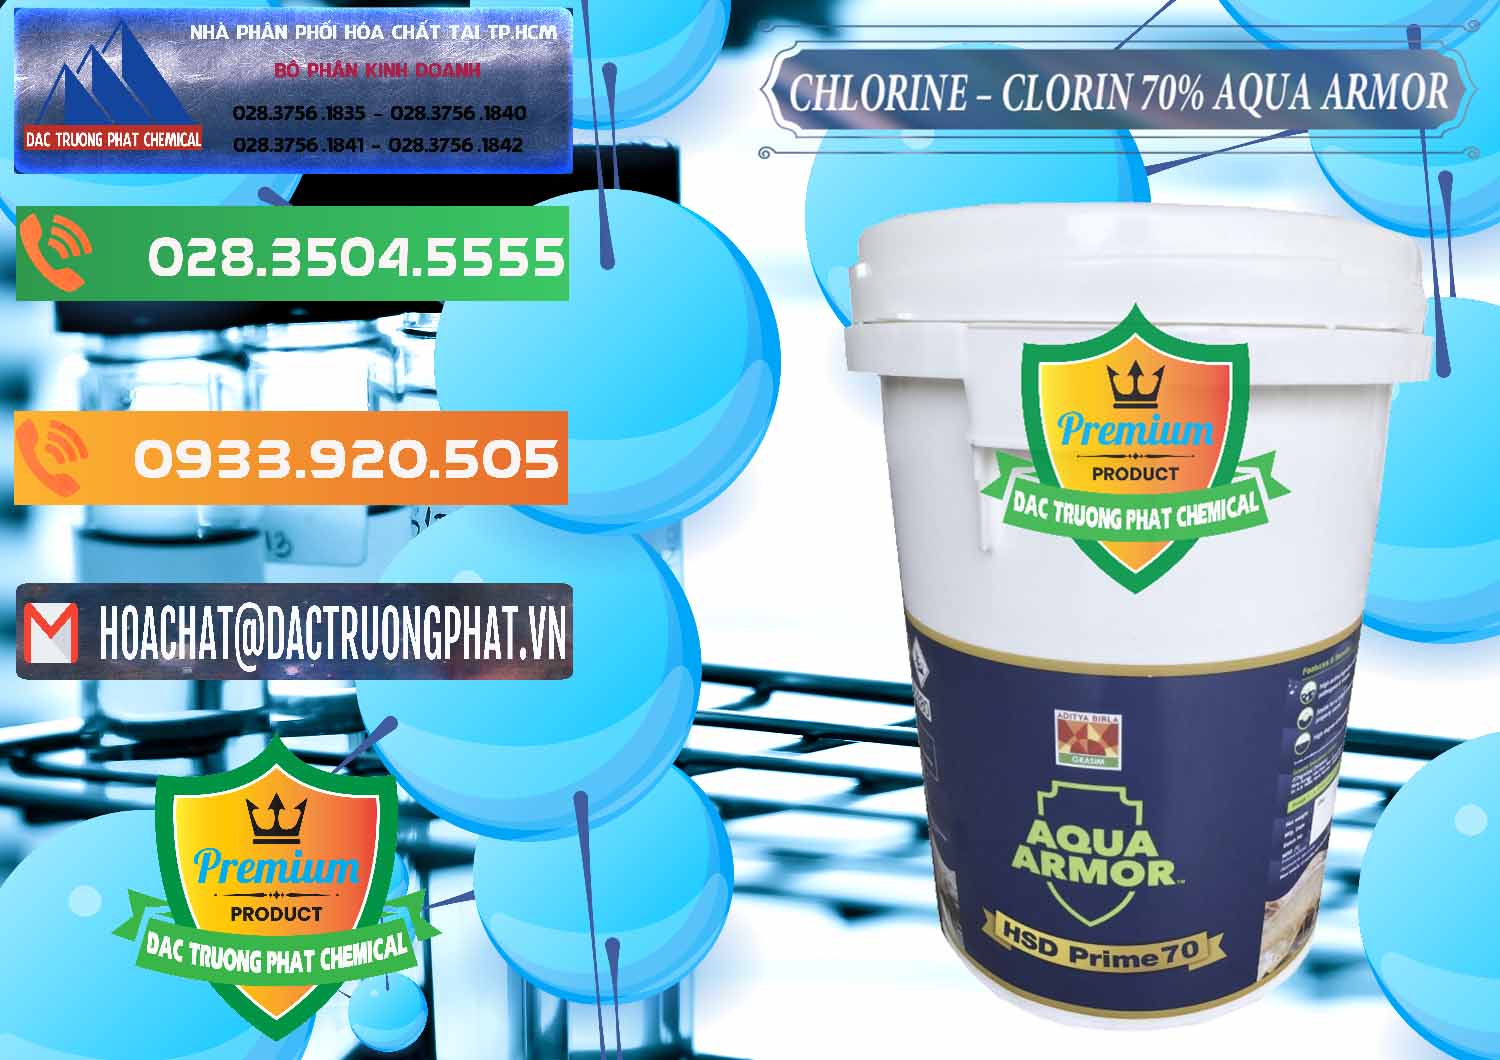 Cty cung cấp & bán Chlorine – Clorin 70% Aqua Armor Aditya Birla Grasim Ấn Độ India - 0241 - Công ty nhập khẩu và cung cấp hóa chất tại TP.HCM - hoachatxulynuoc.com.vn